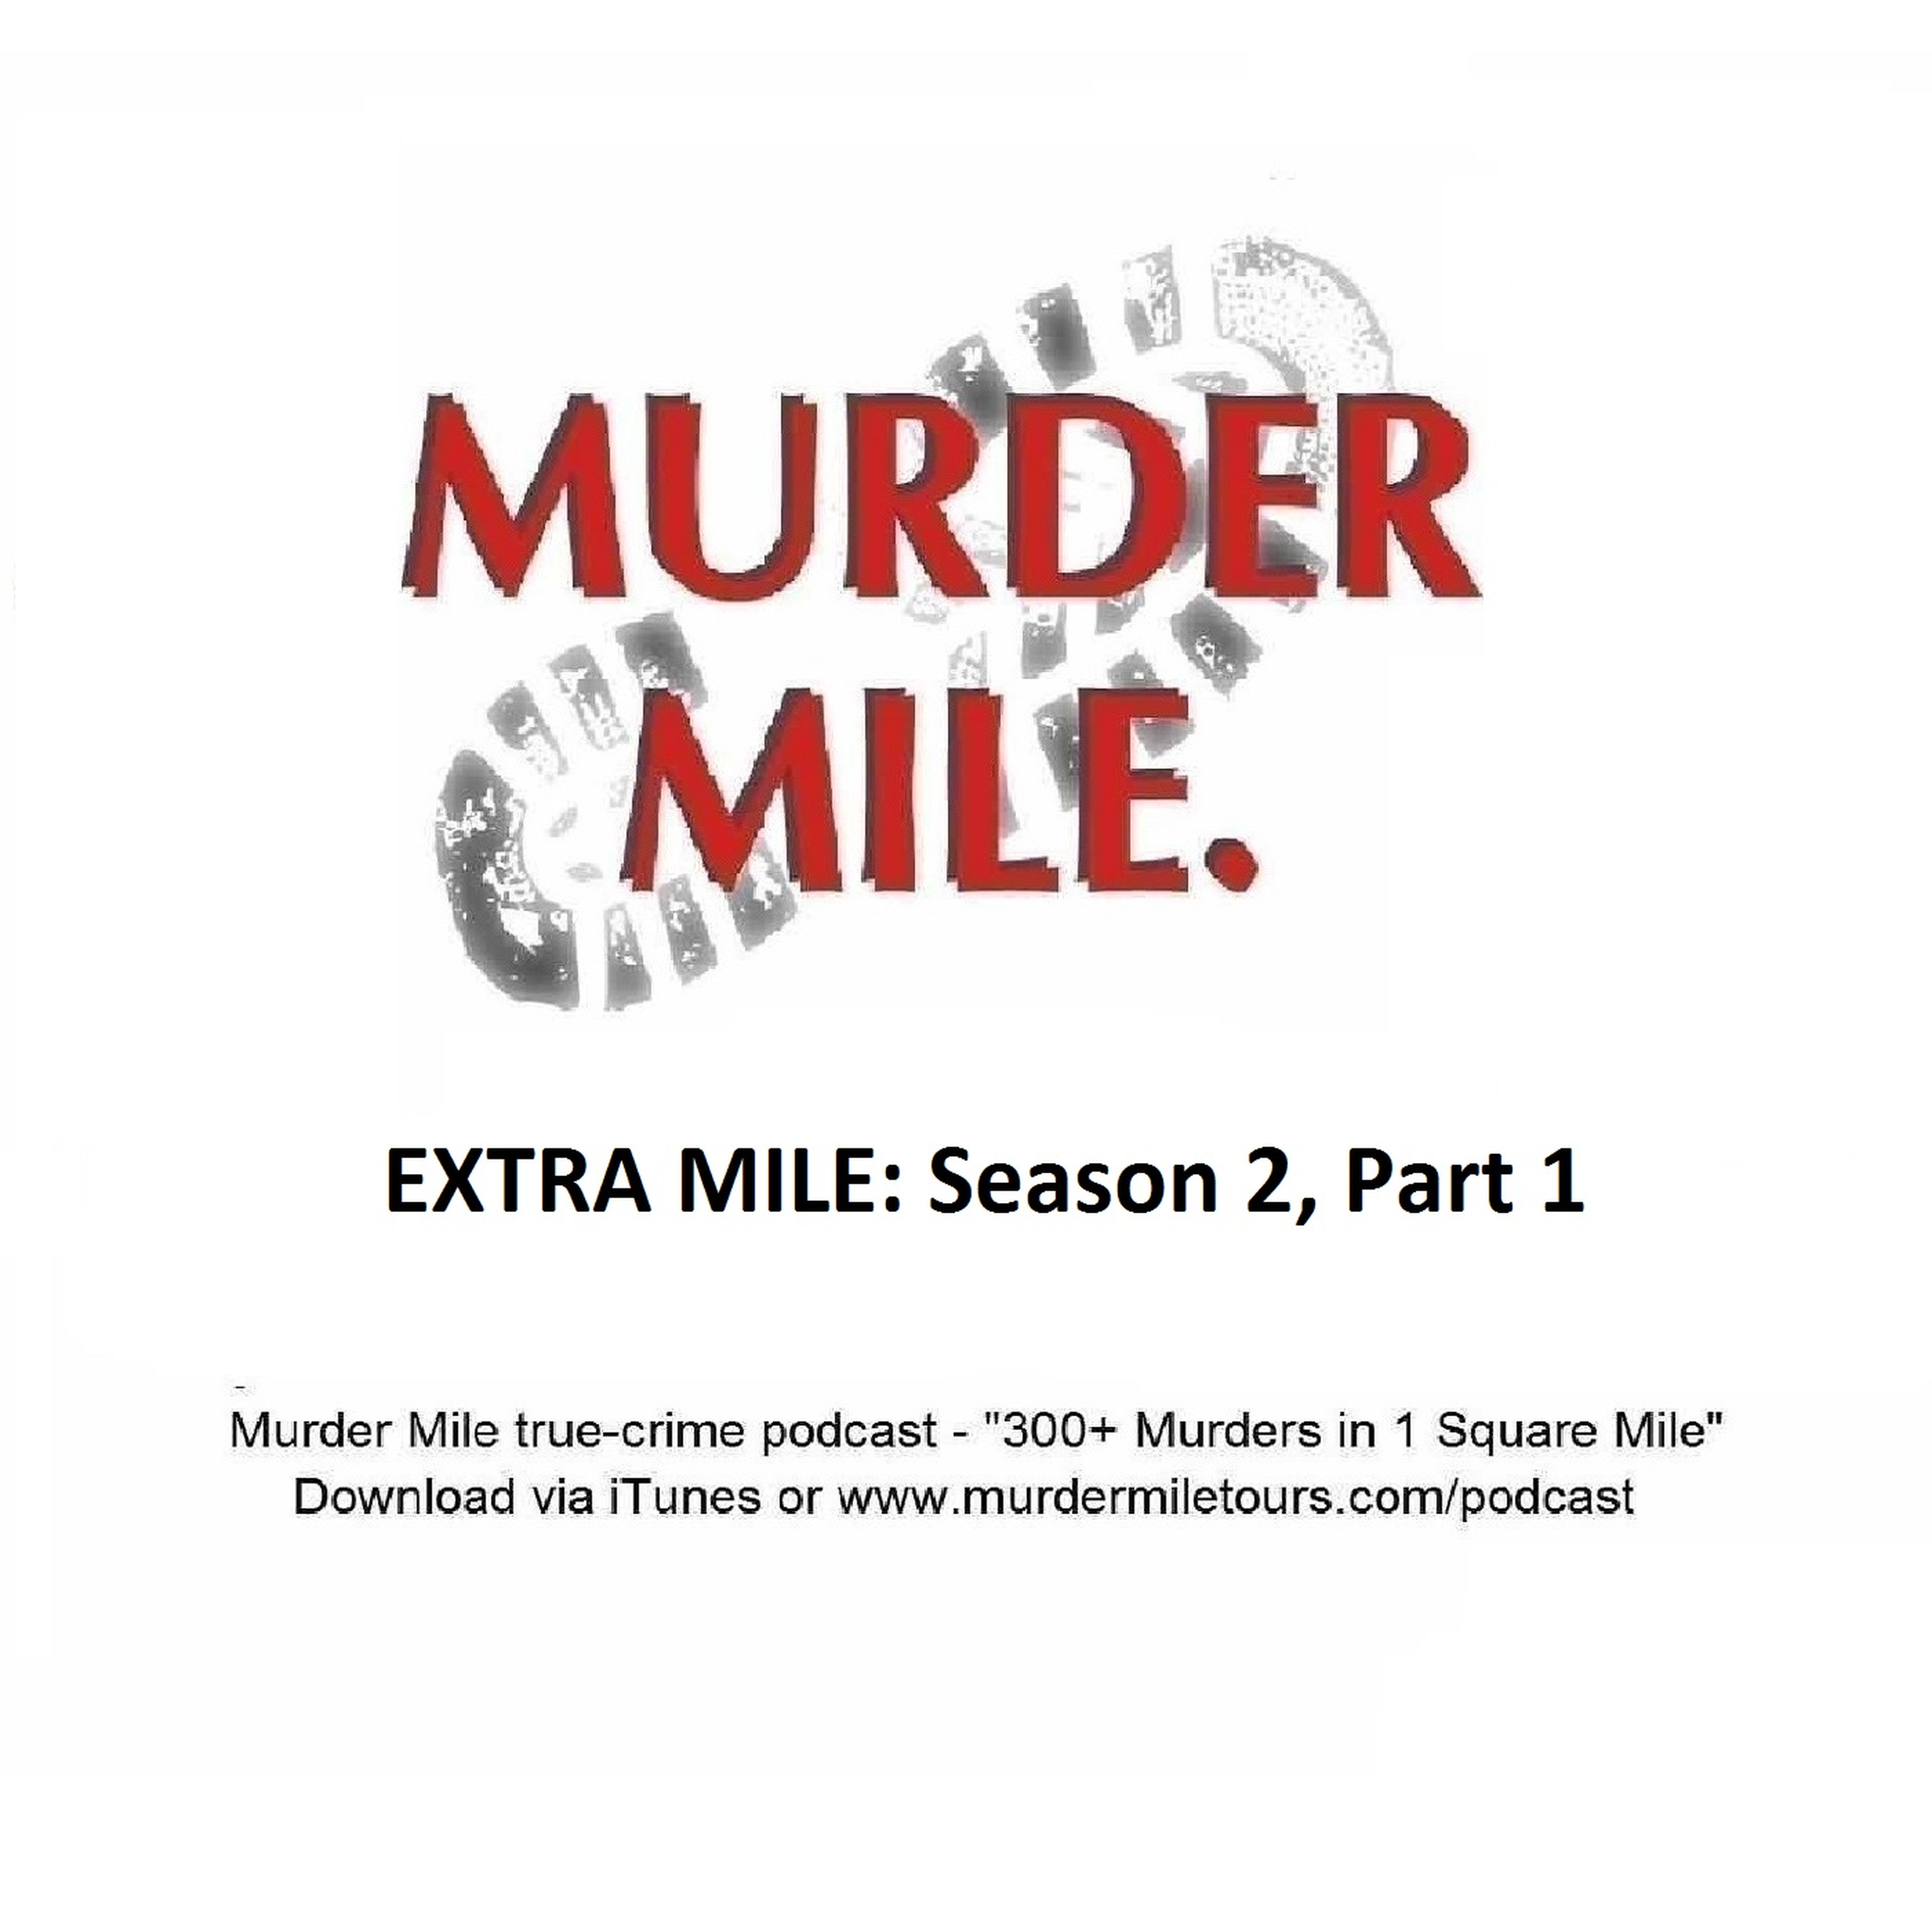 Extra Mile: Season 2, Part 1